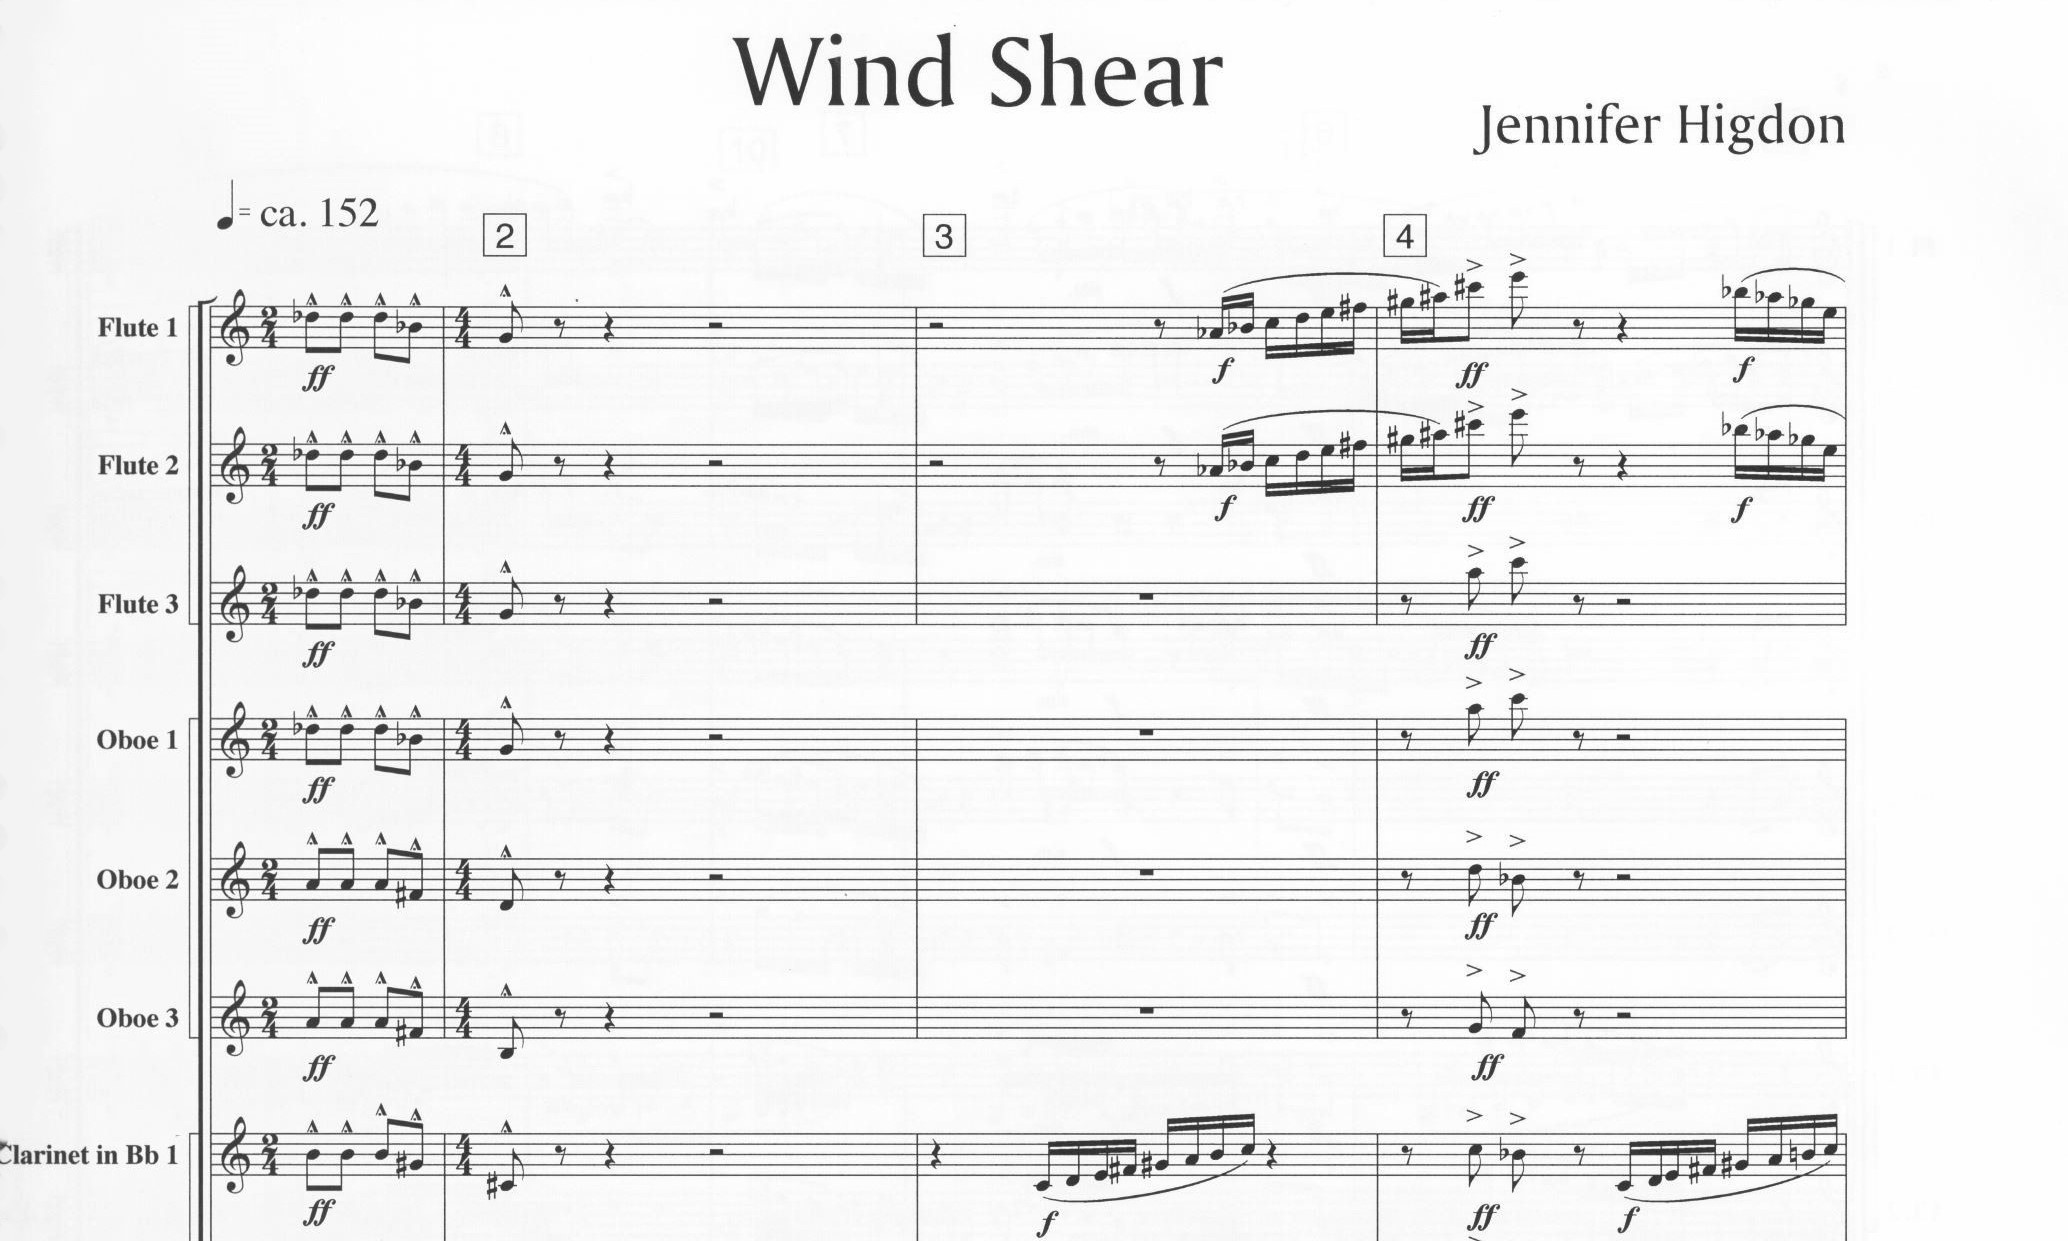 Wind Shear - Jennifer Higdon